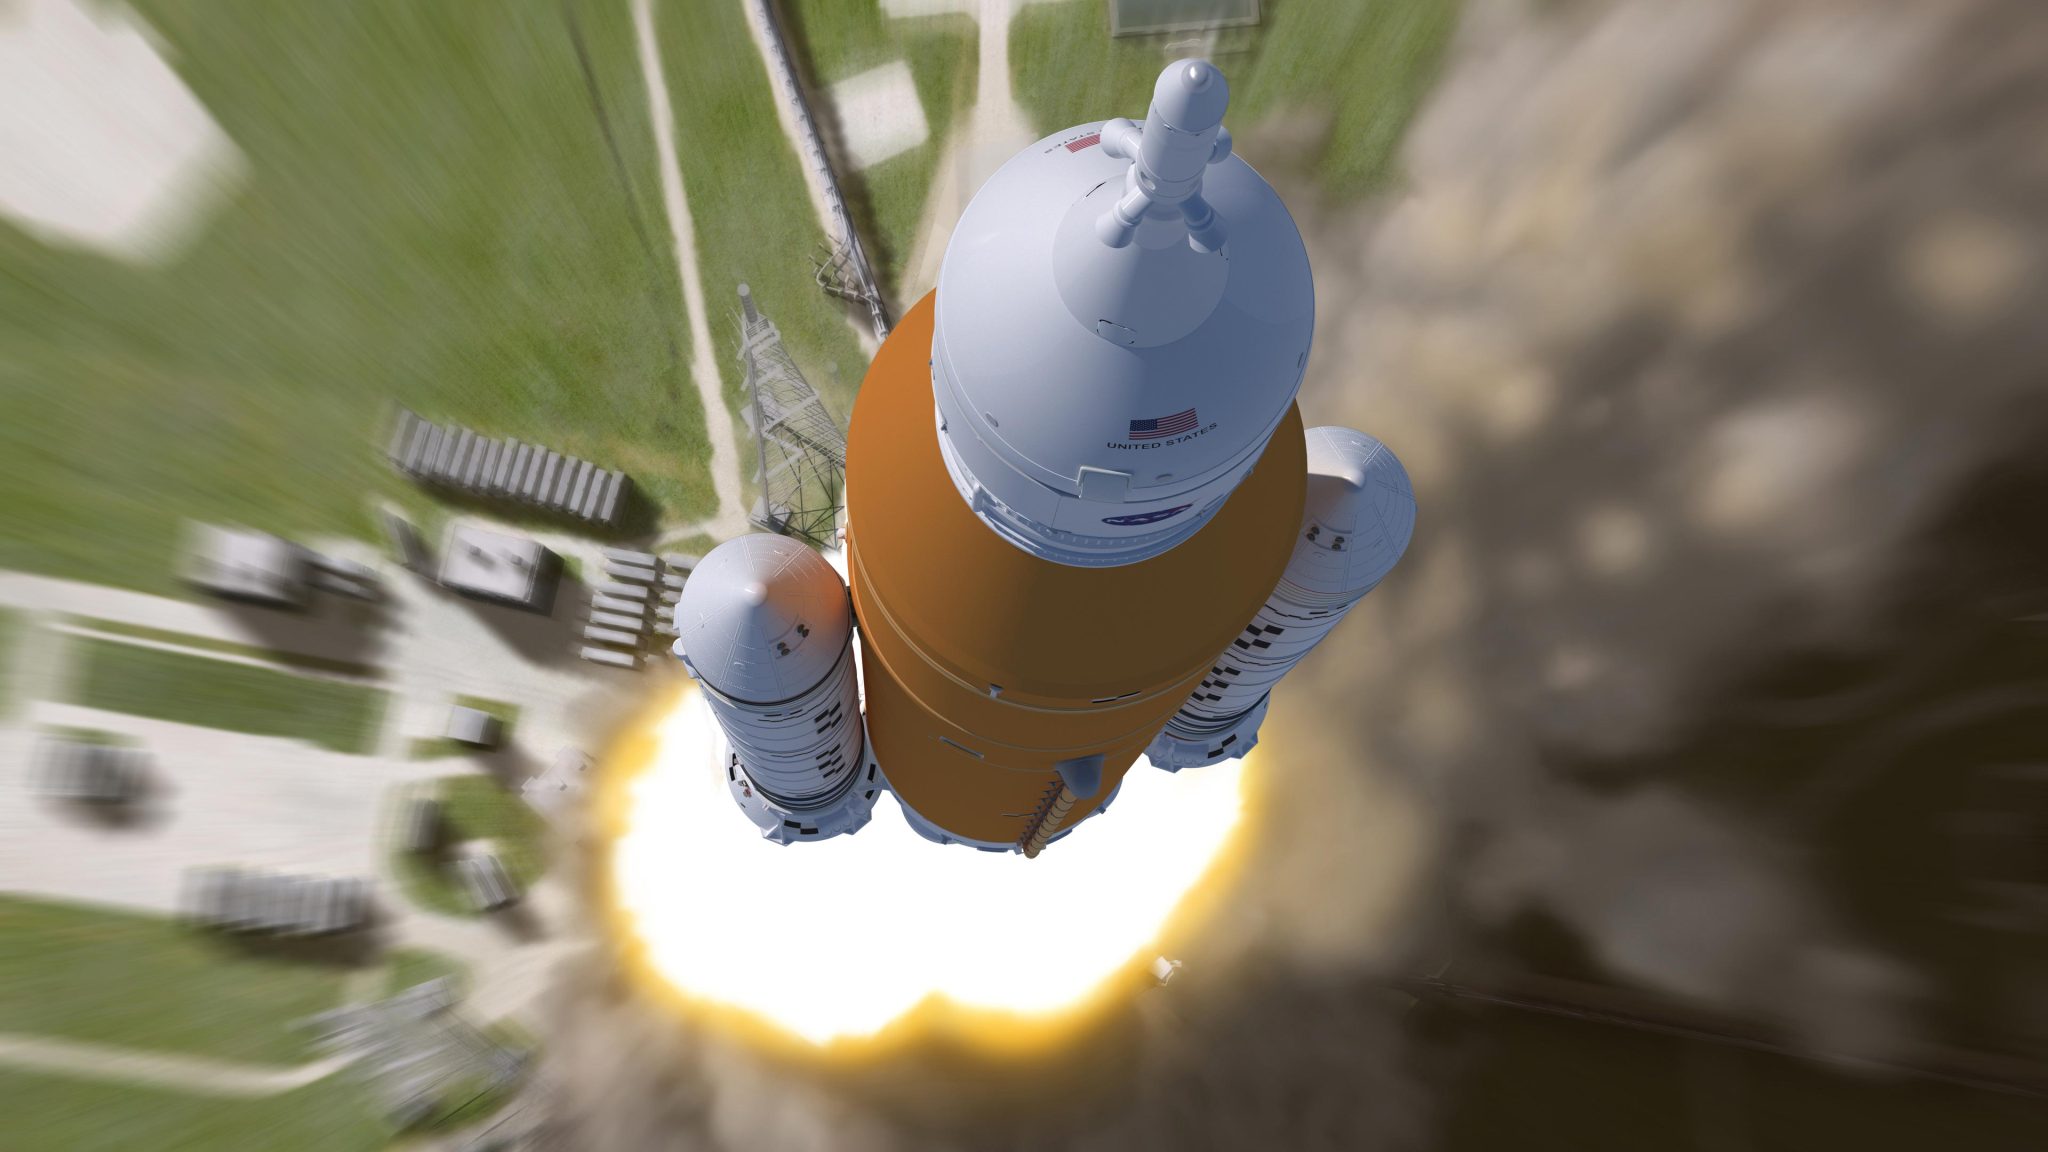 El cohete Space Launch System de la NASA está listo para lanzar la luna en Artemis I [Video]